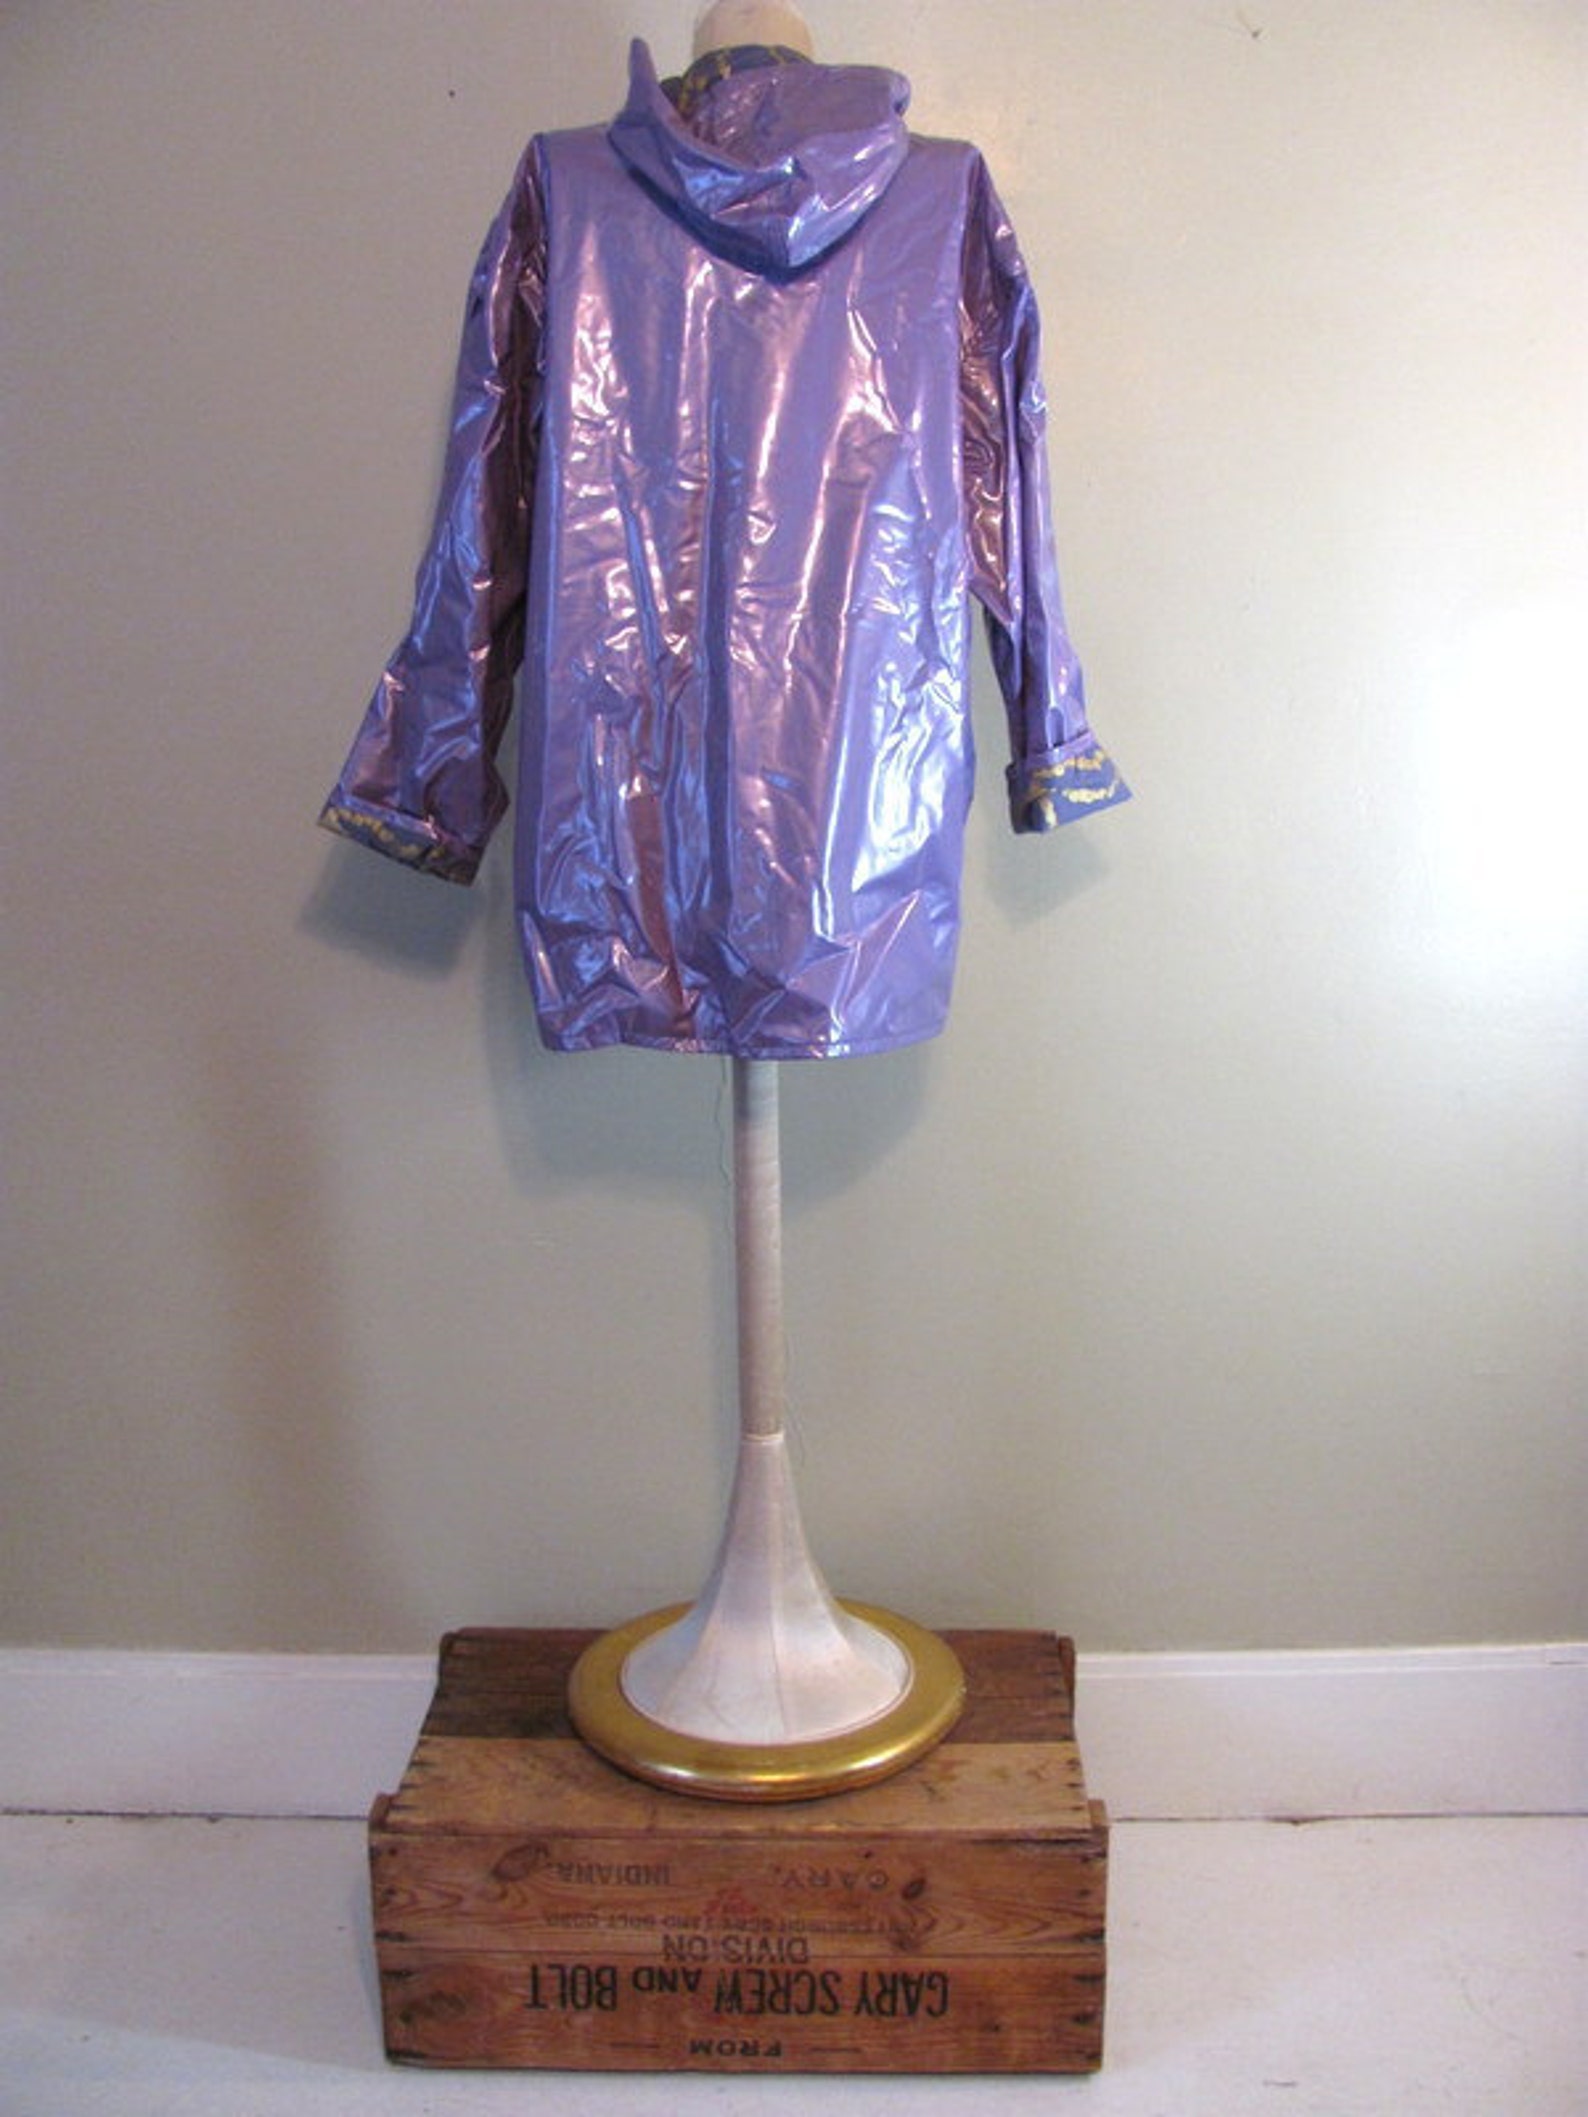 Vintage lilac purple vinyl raincoat w hood and snaps | Etsy